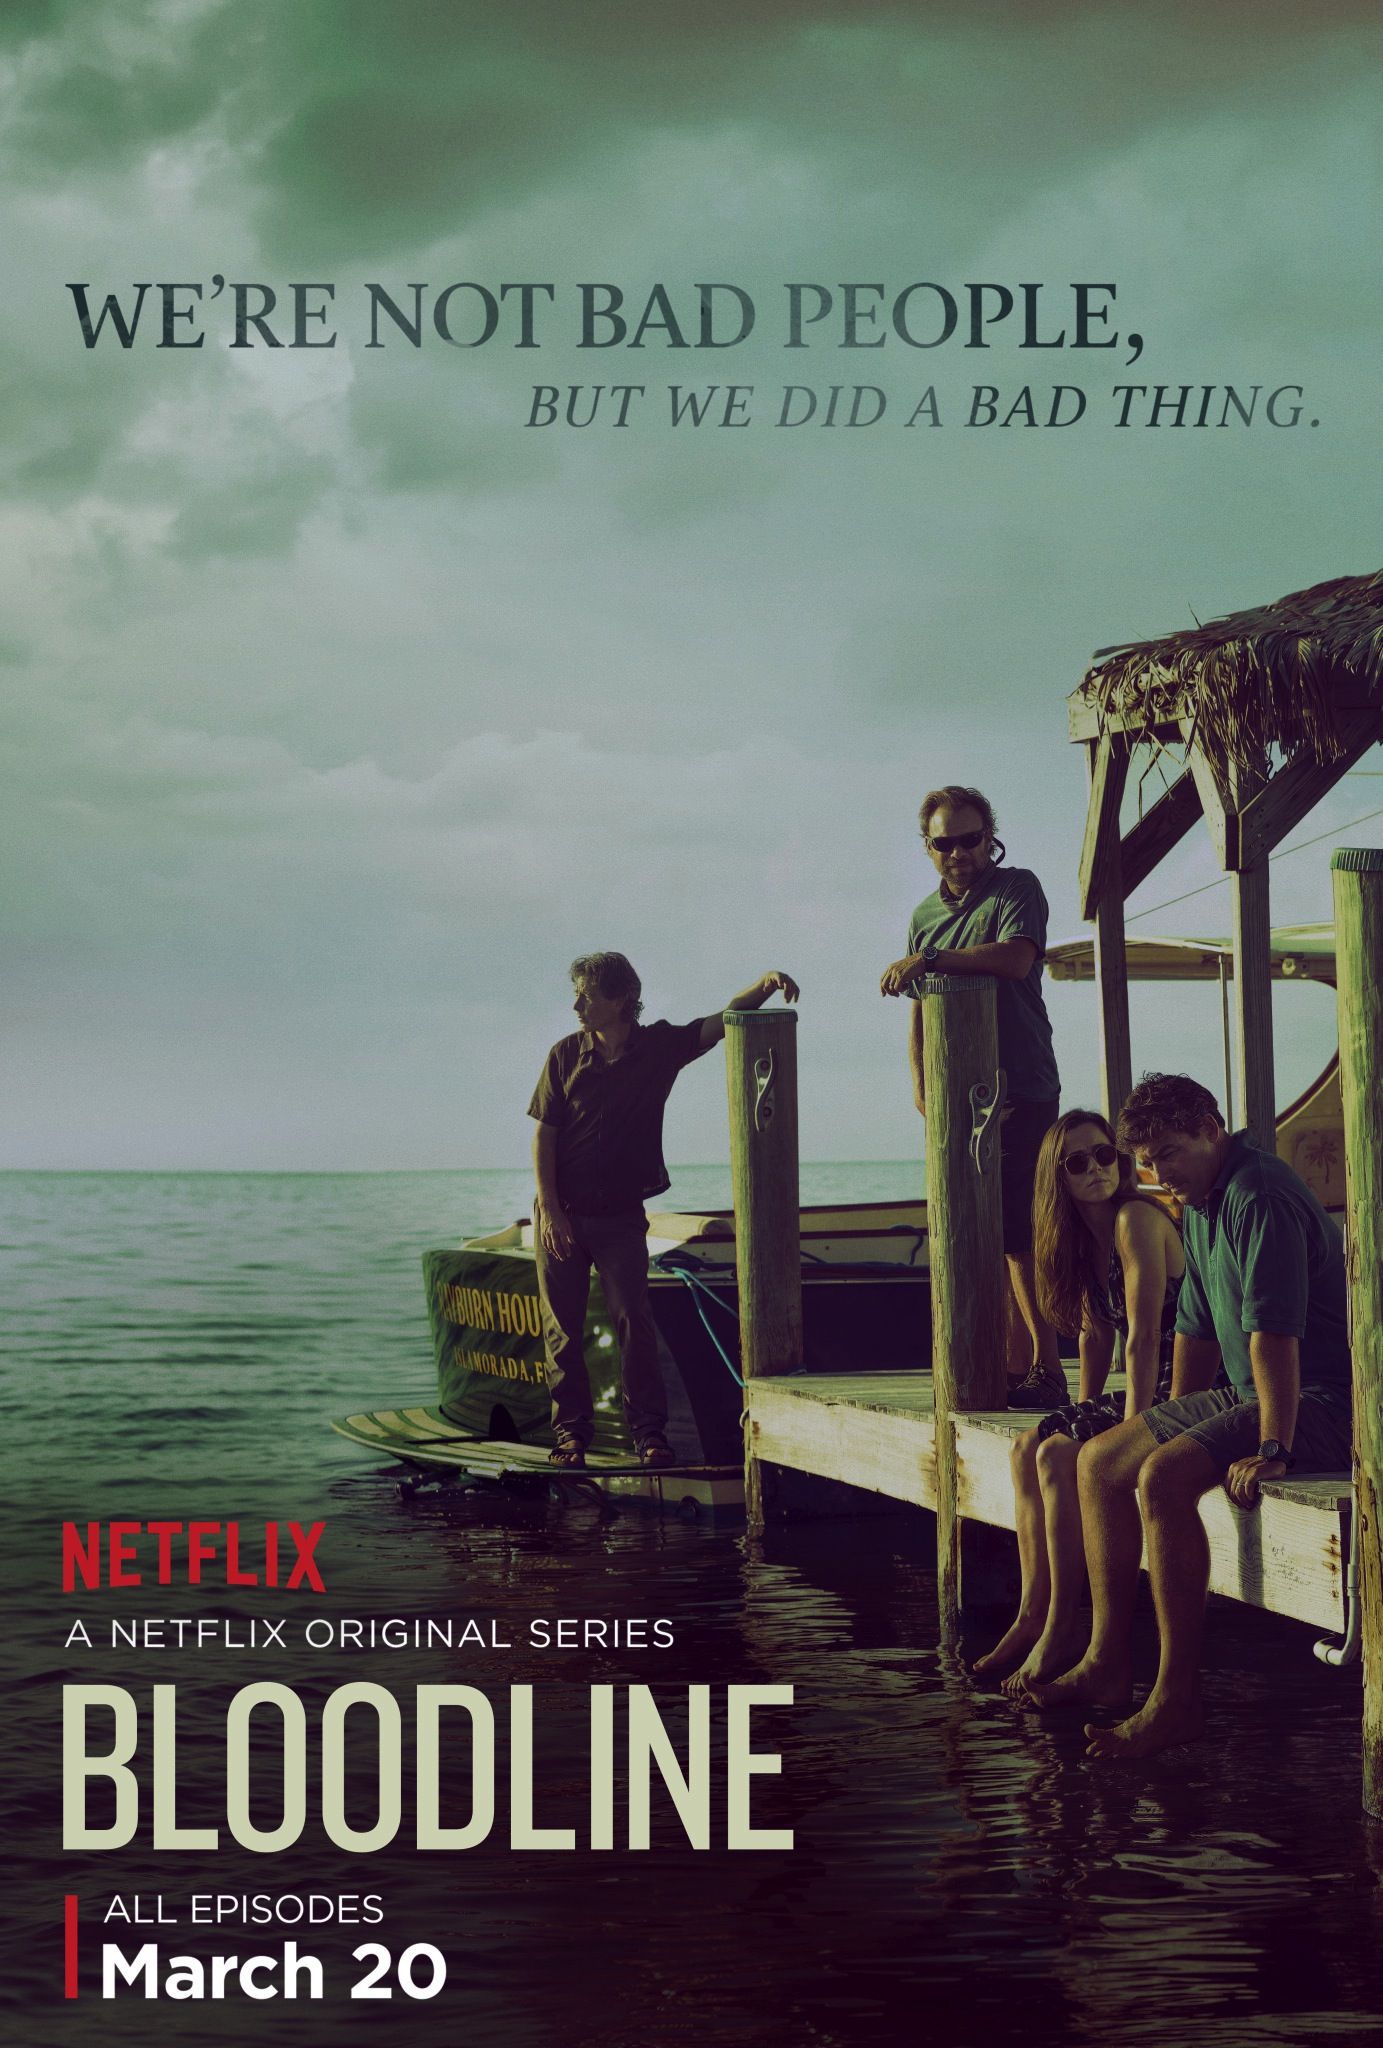 Bloodline Netflix